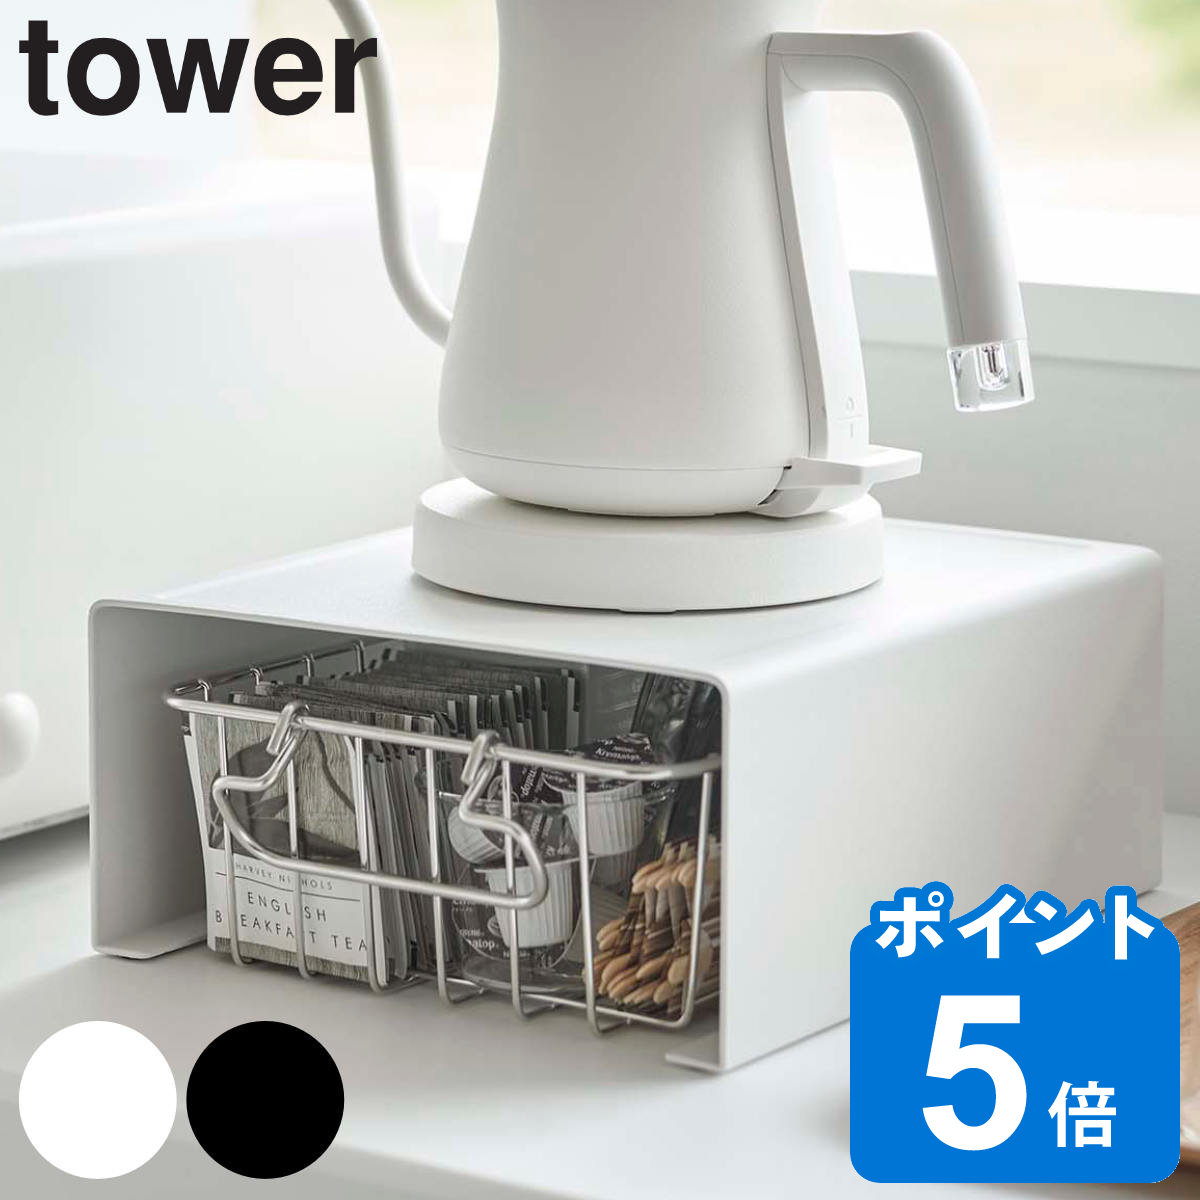 tower キッチン家電下ラック タワー